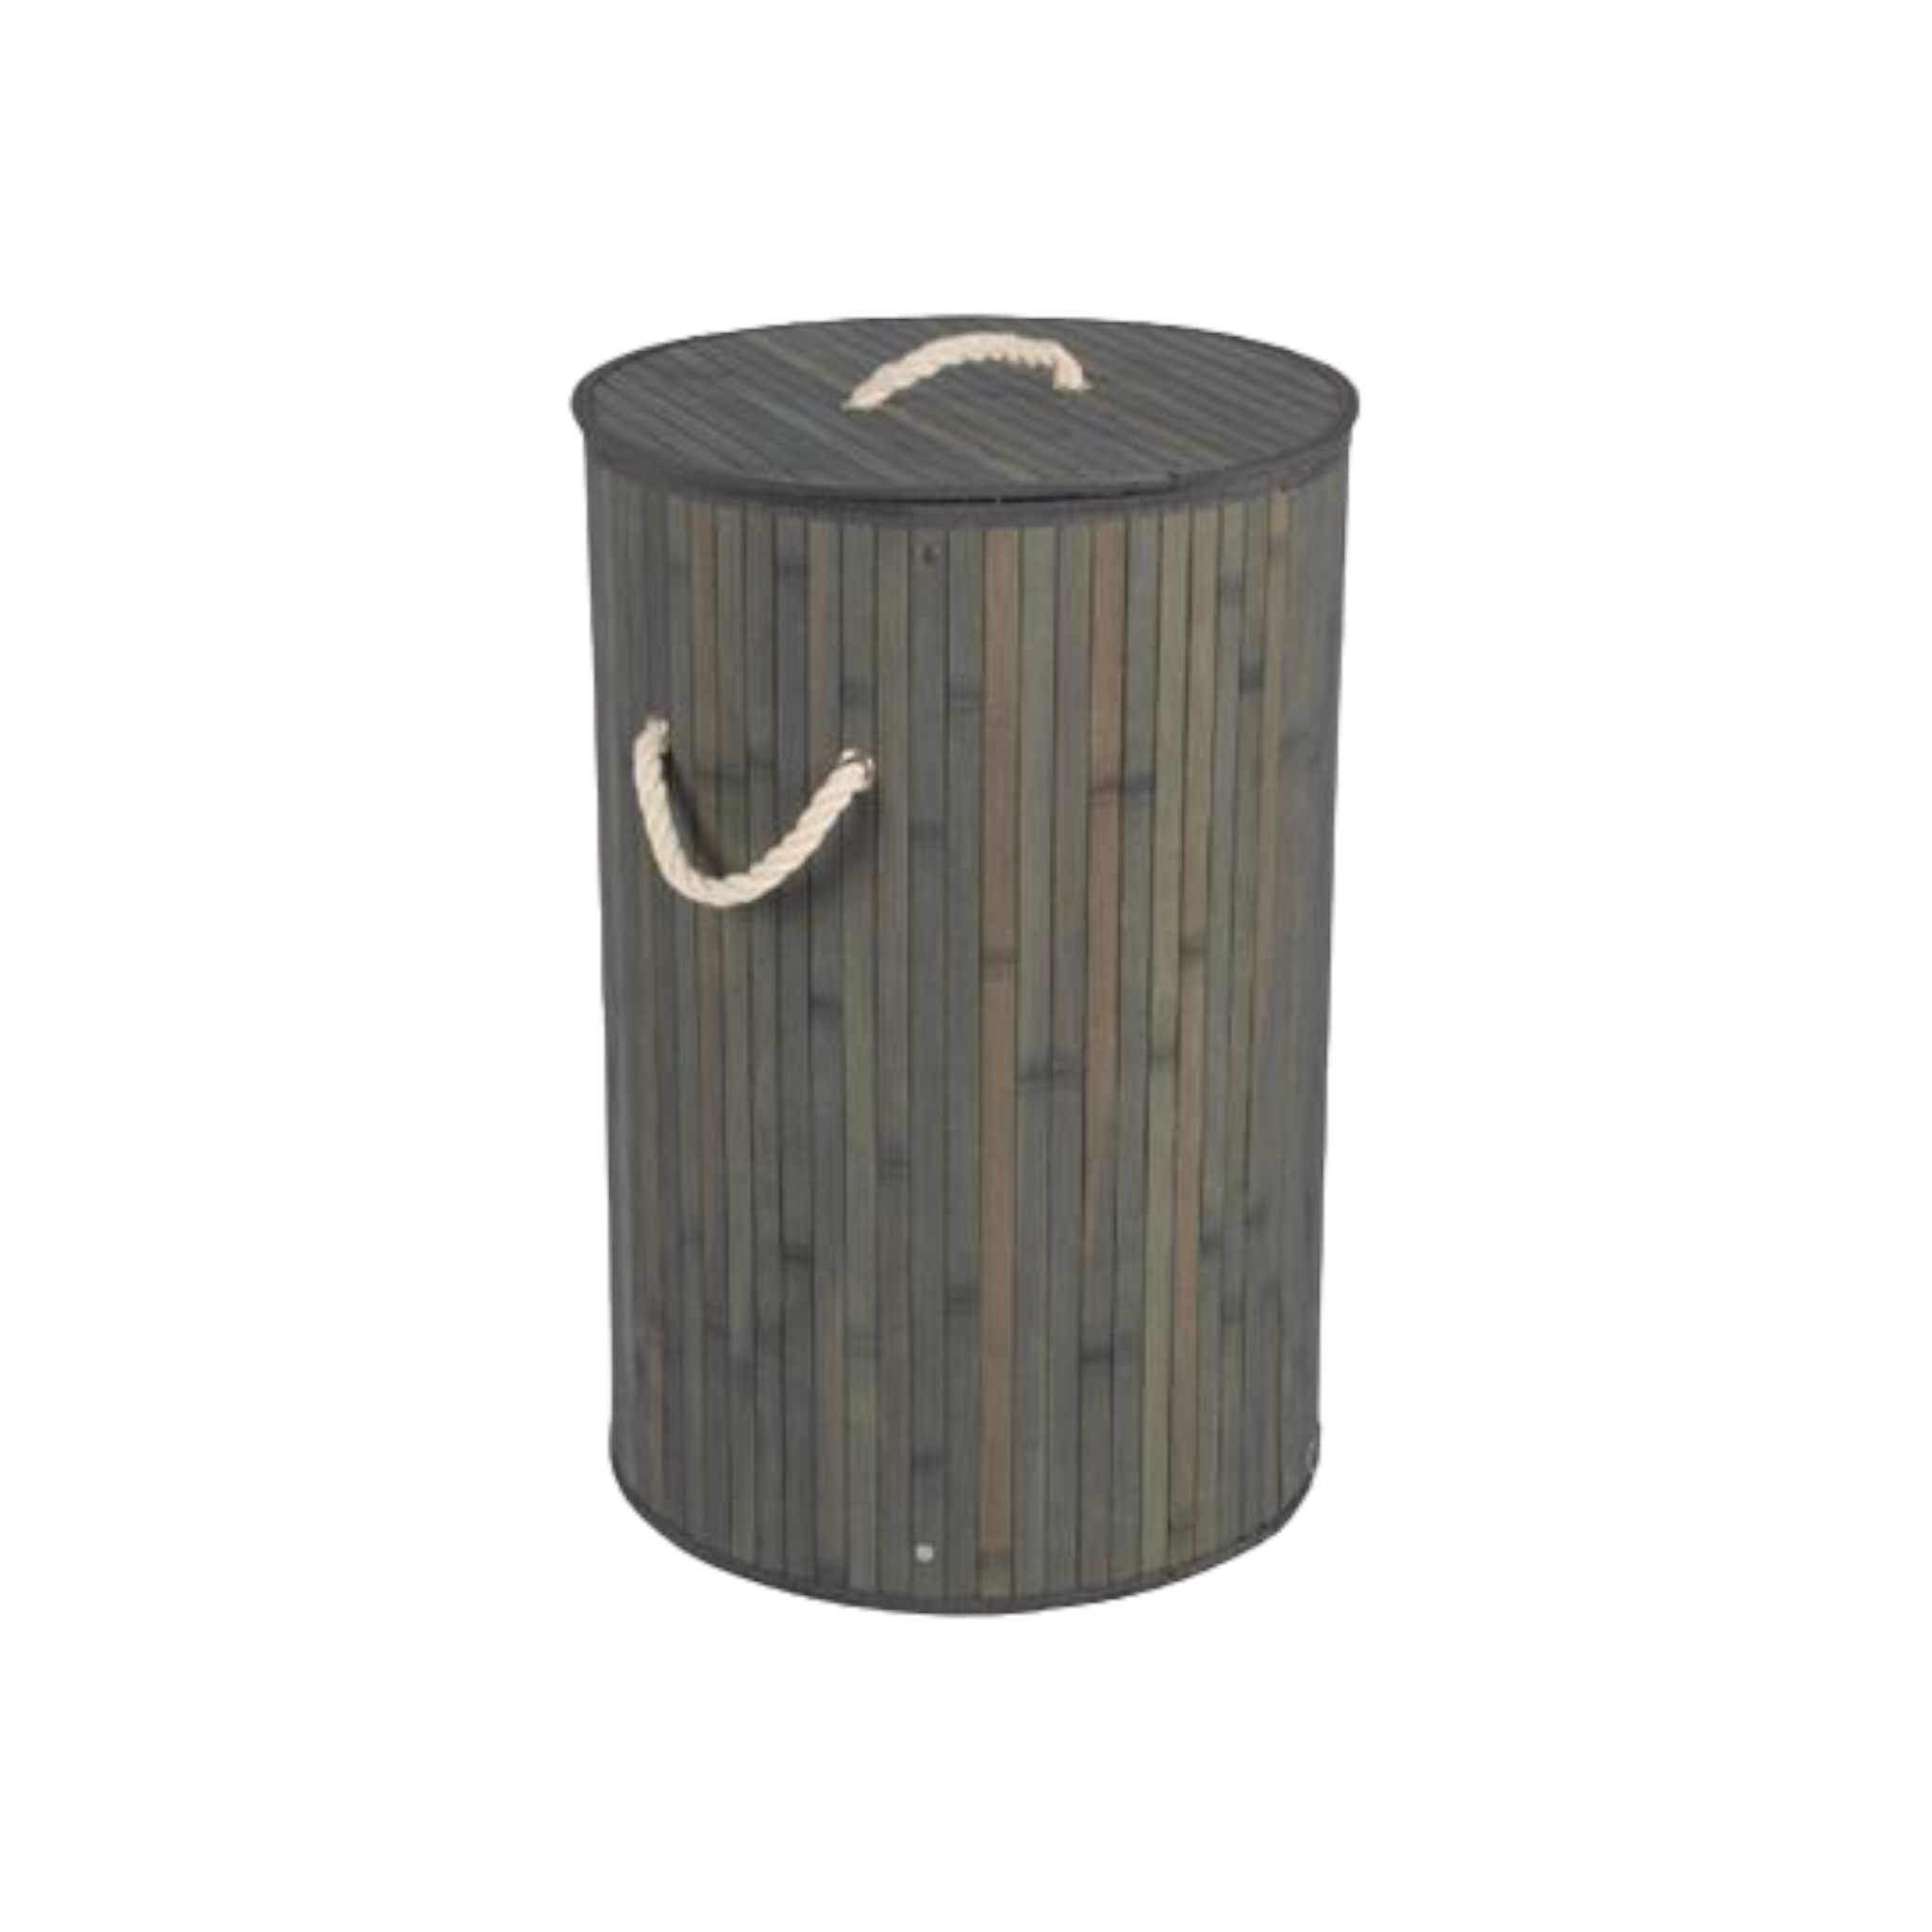 Aqua Bamboo Foldable Laundry Basket Round Grey 15608